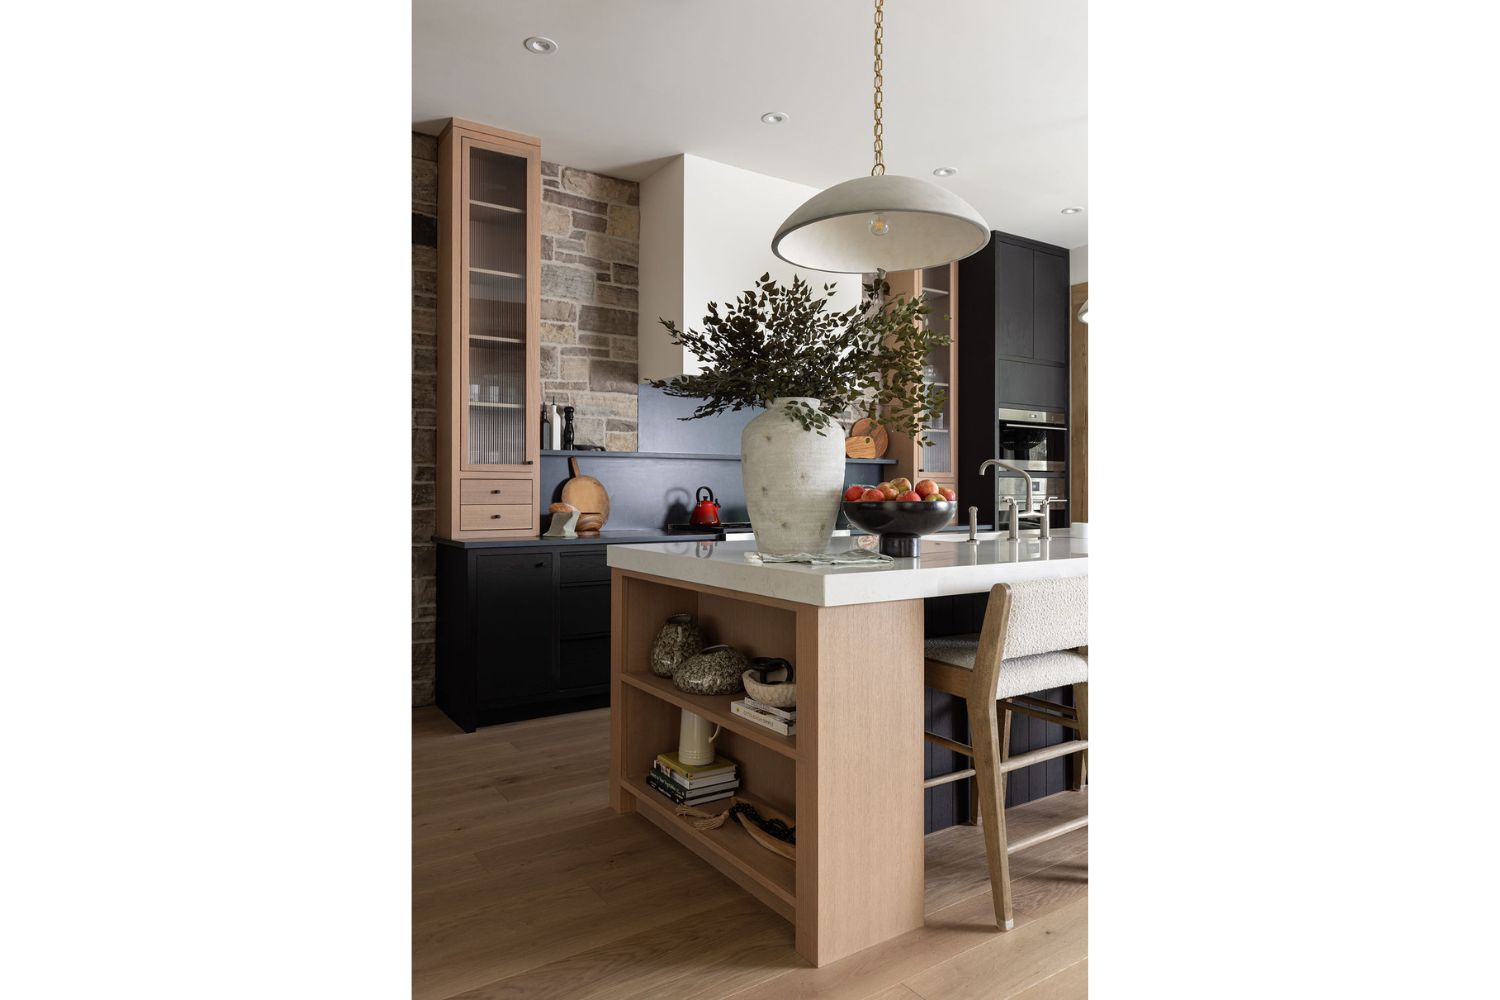 Project Fieldale: Custom red oak shelf in kitchen island